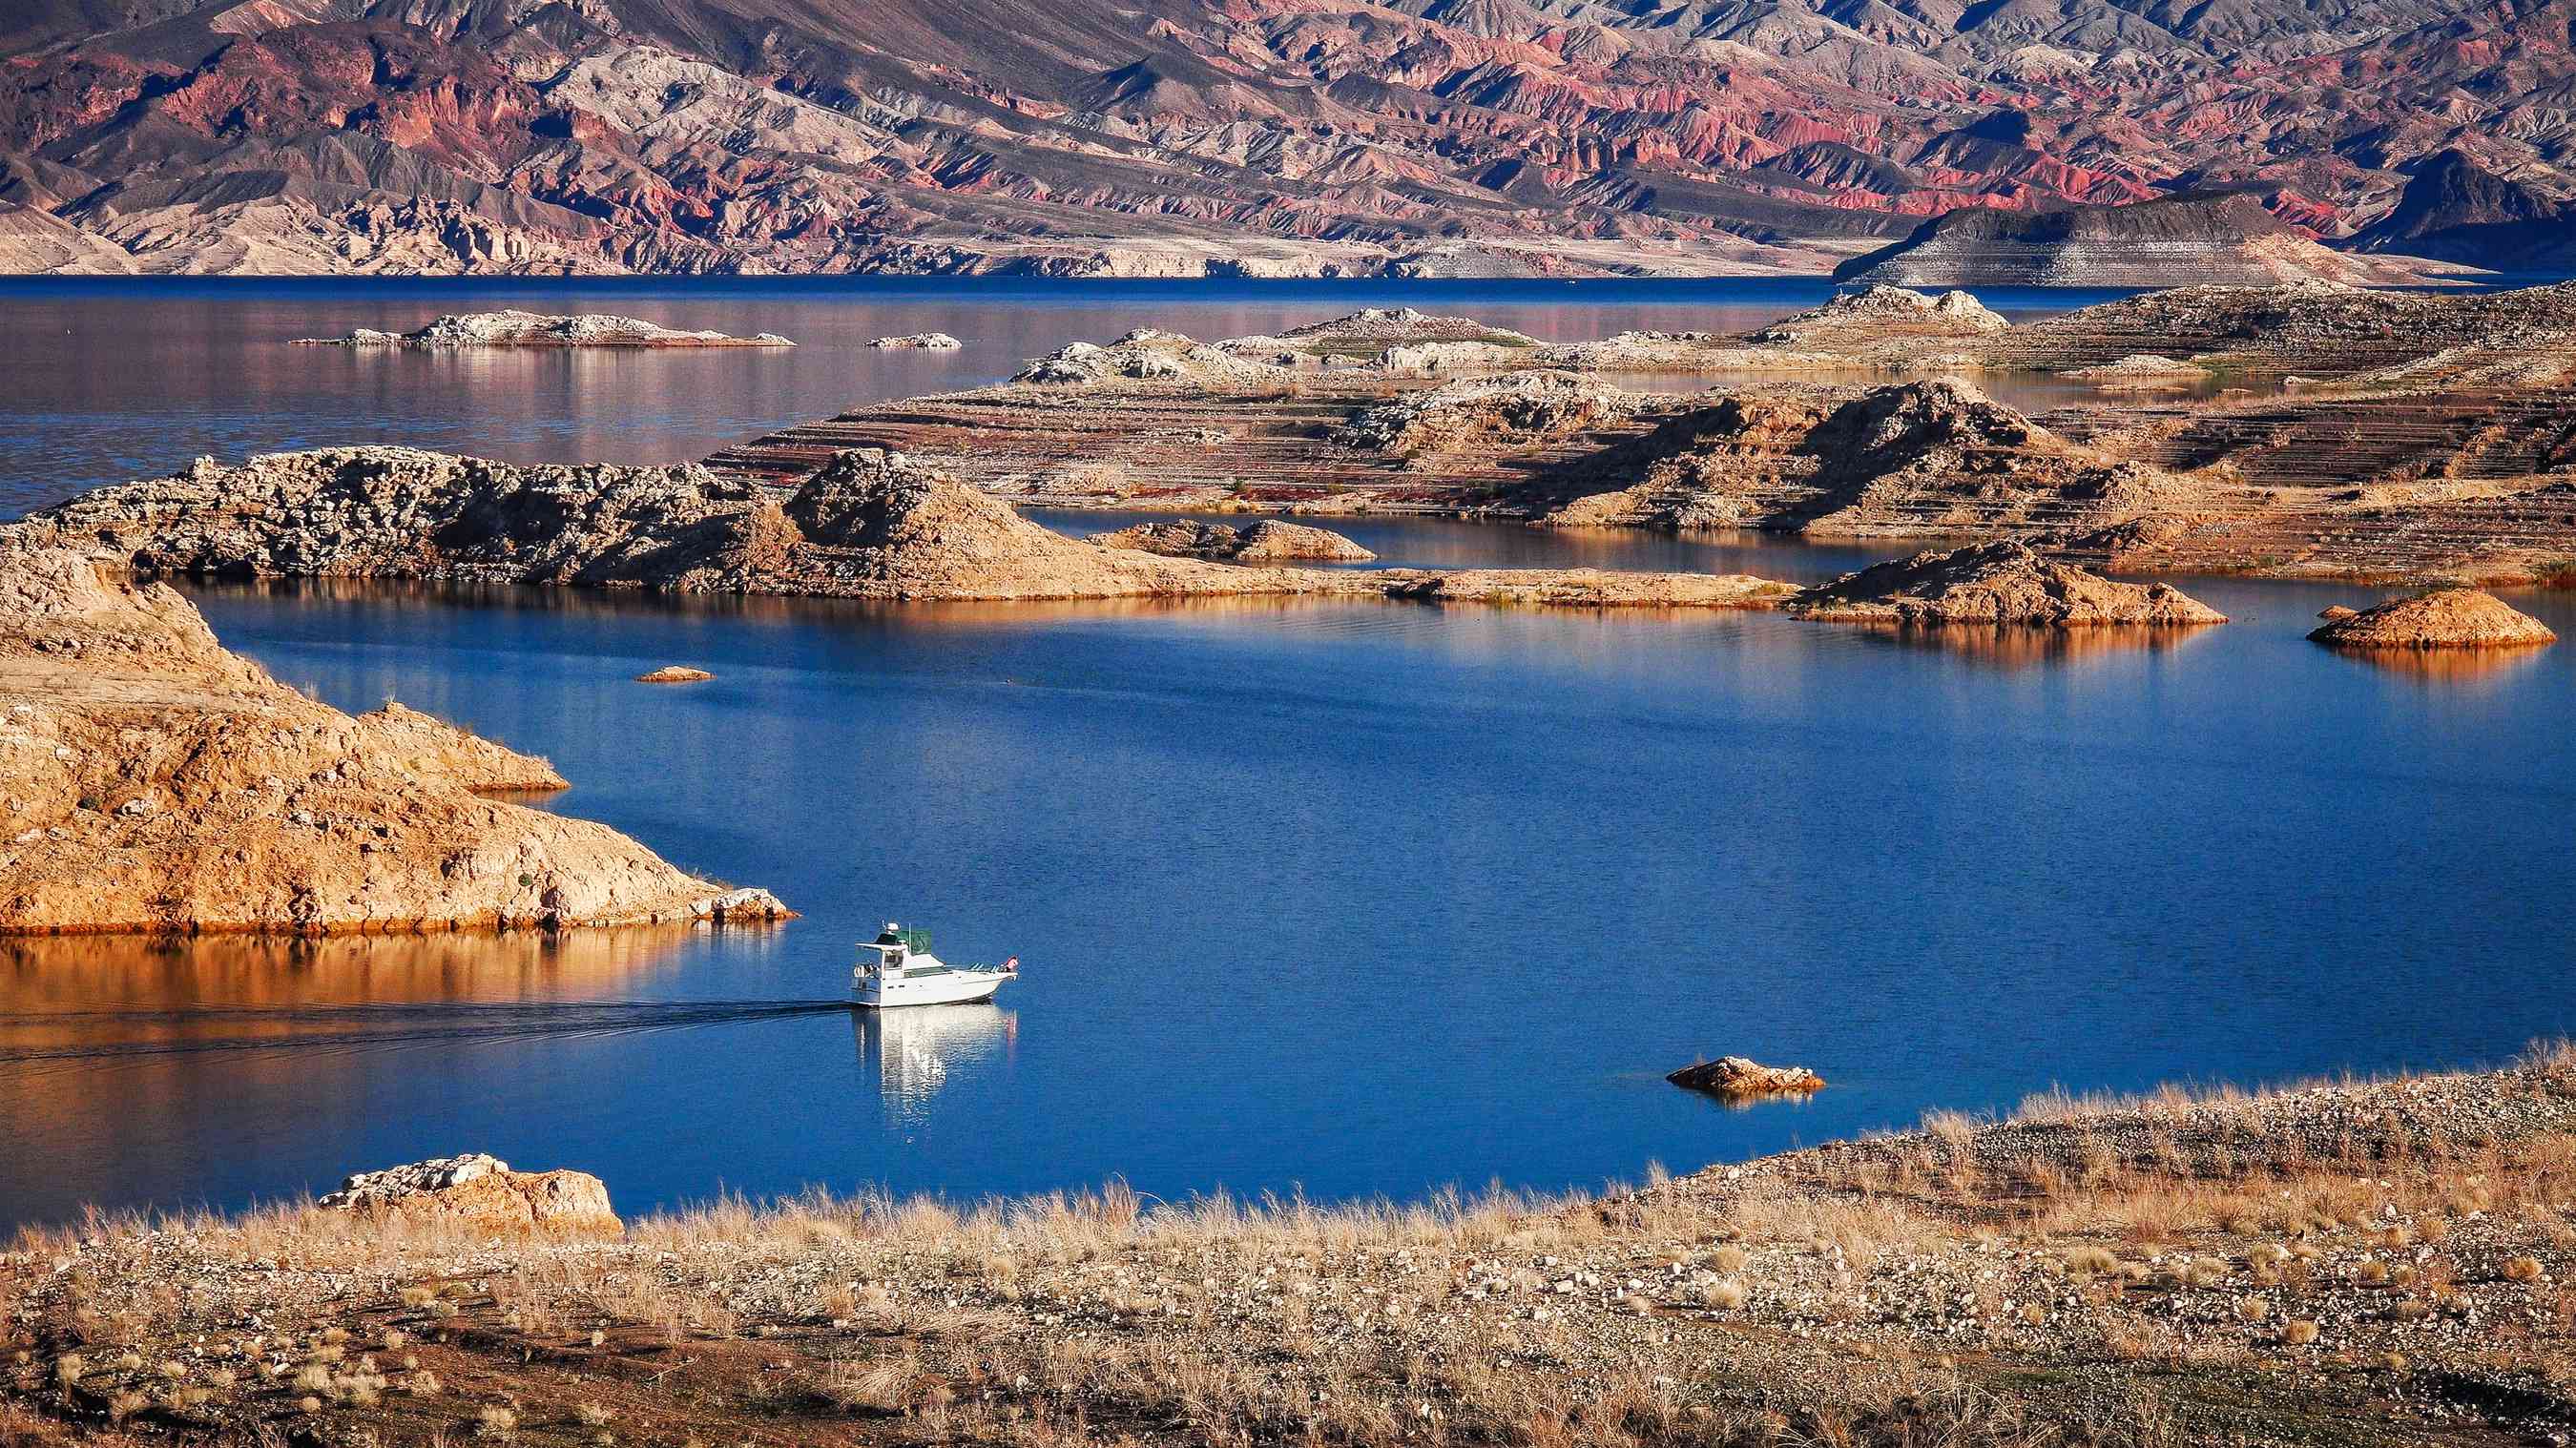 一艘船在沙漠环境下穿越蓝色的湖泊beplay体育官网电脑